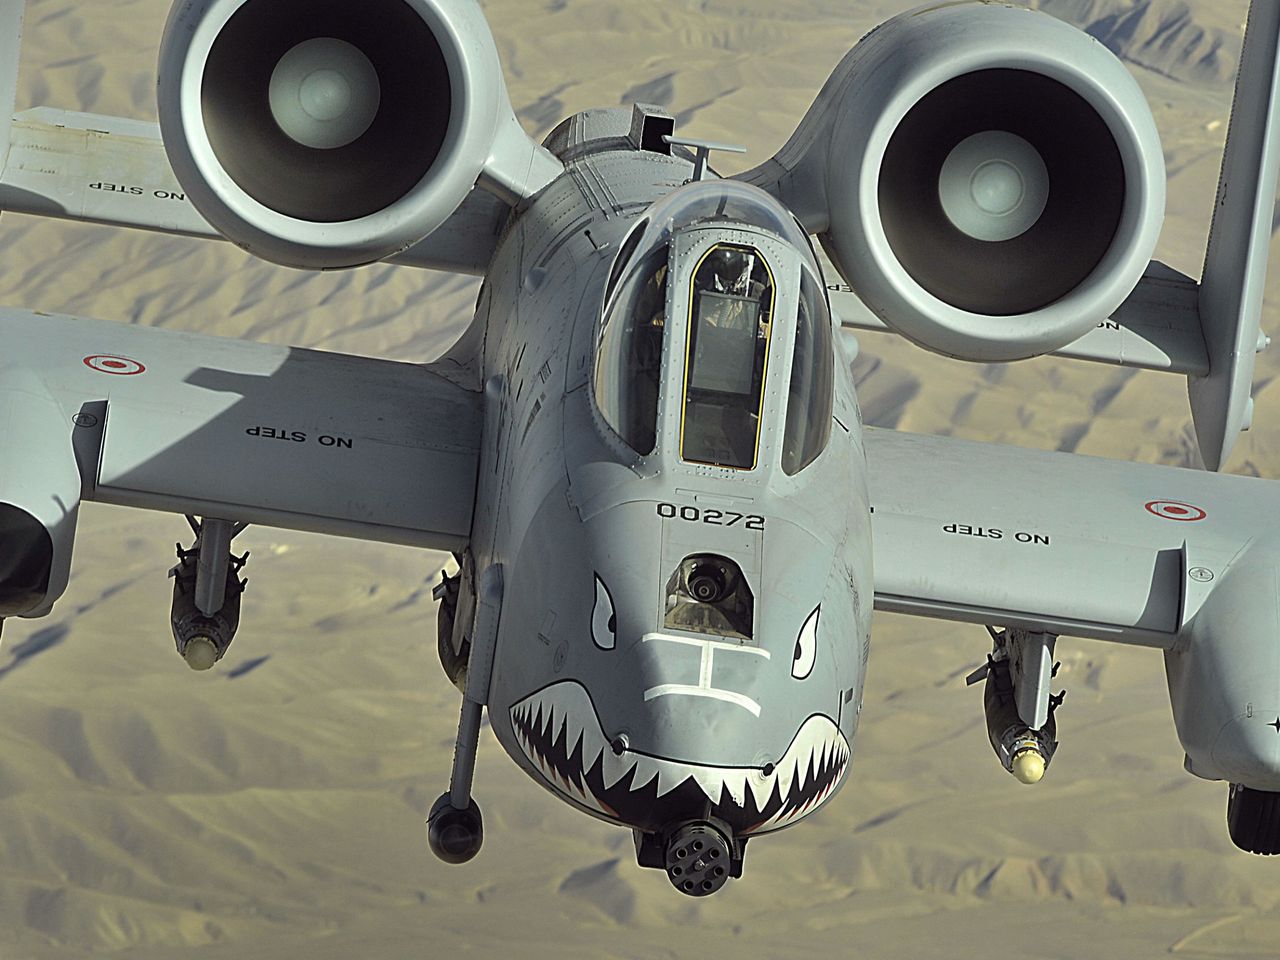 USA wycofują samoloty A-10 Thunderbolt II. To koniec maszyn bliskiego wsparcia